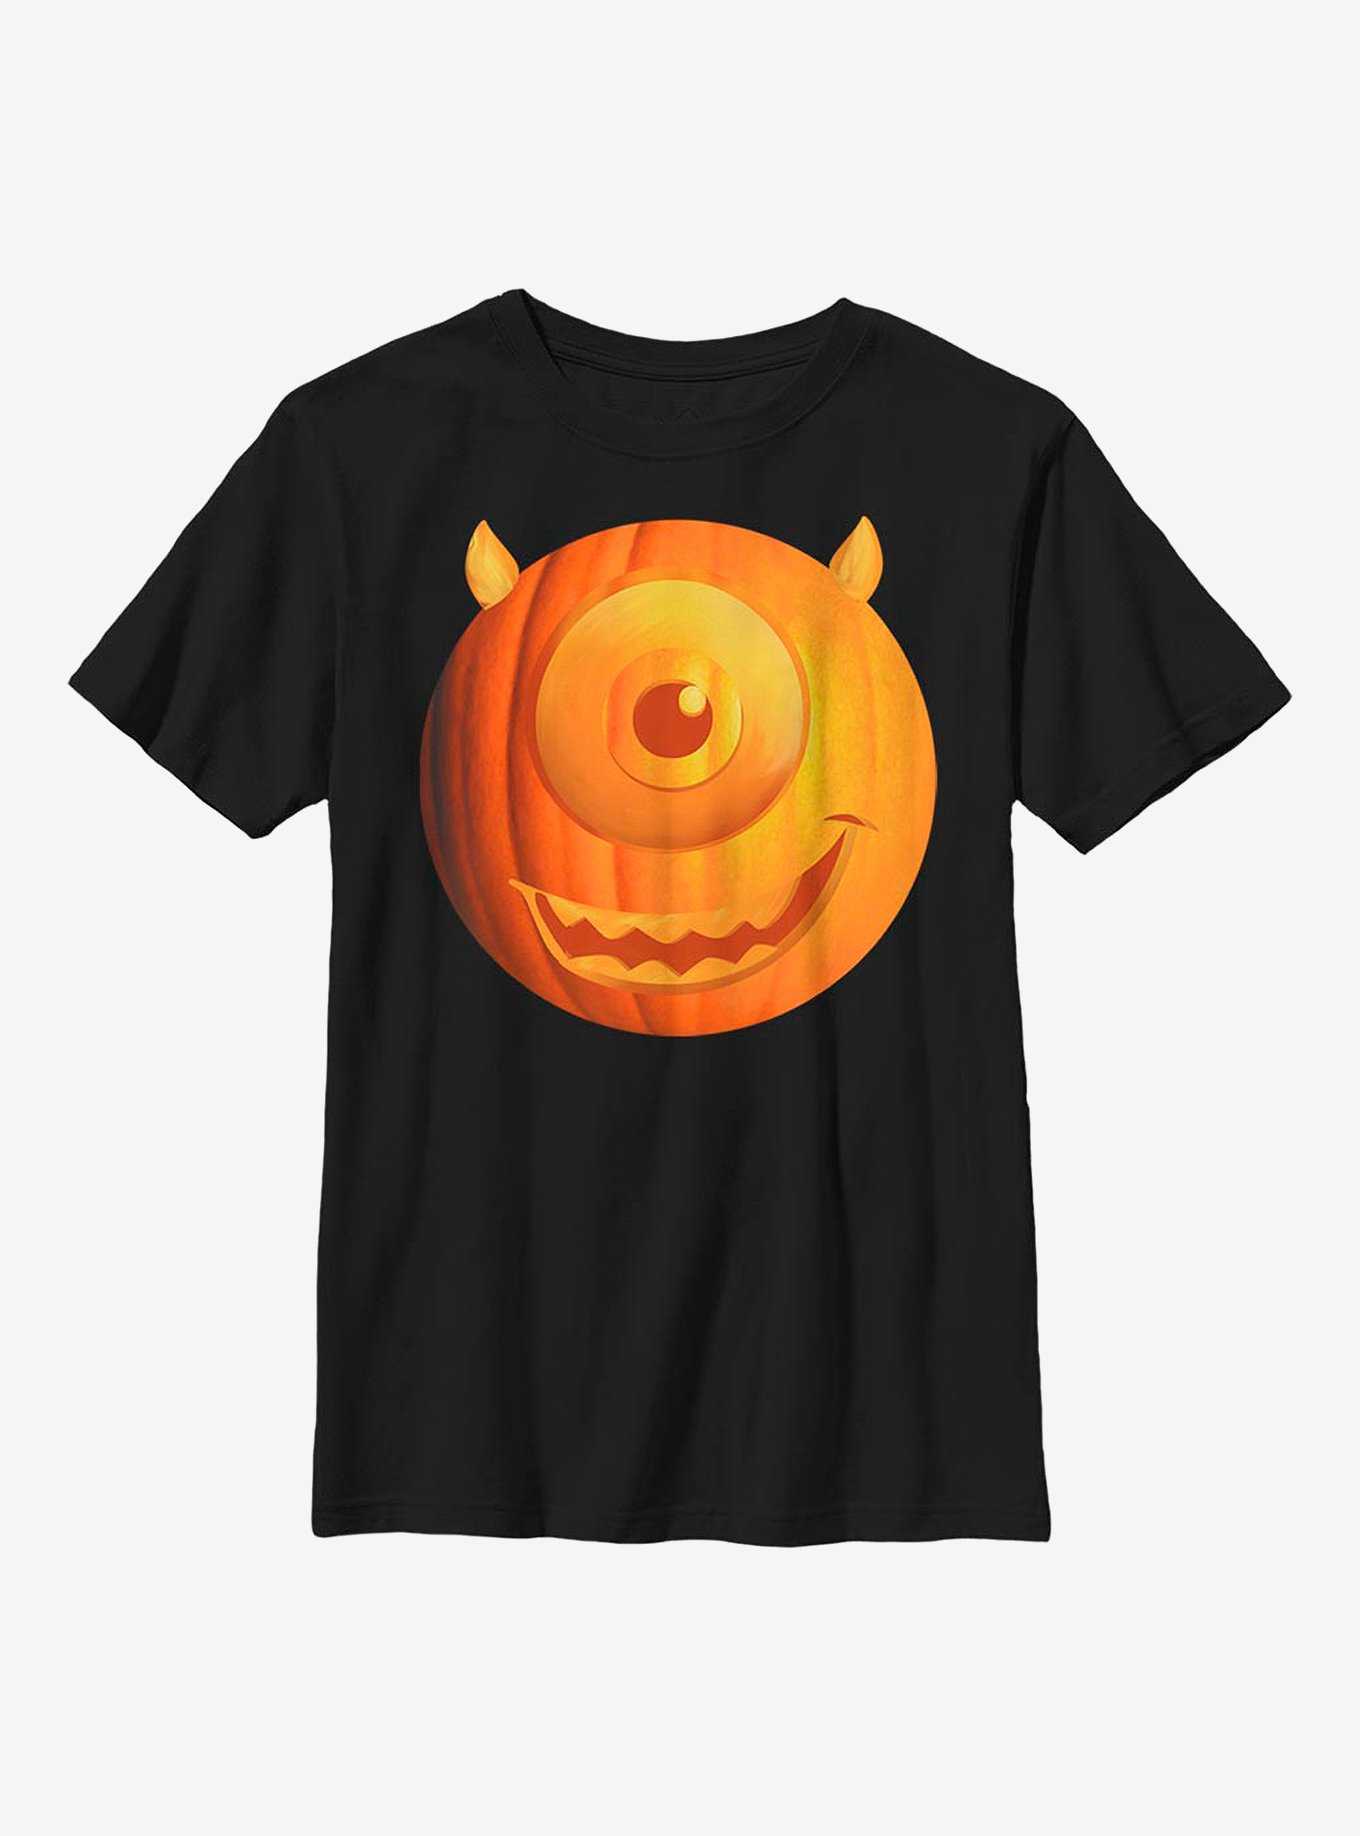 Disney Pixar Monsters University Pumpkin Mike Youth T-Shirt, , hi-res